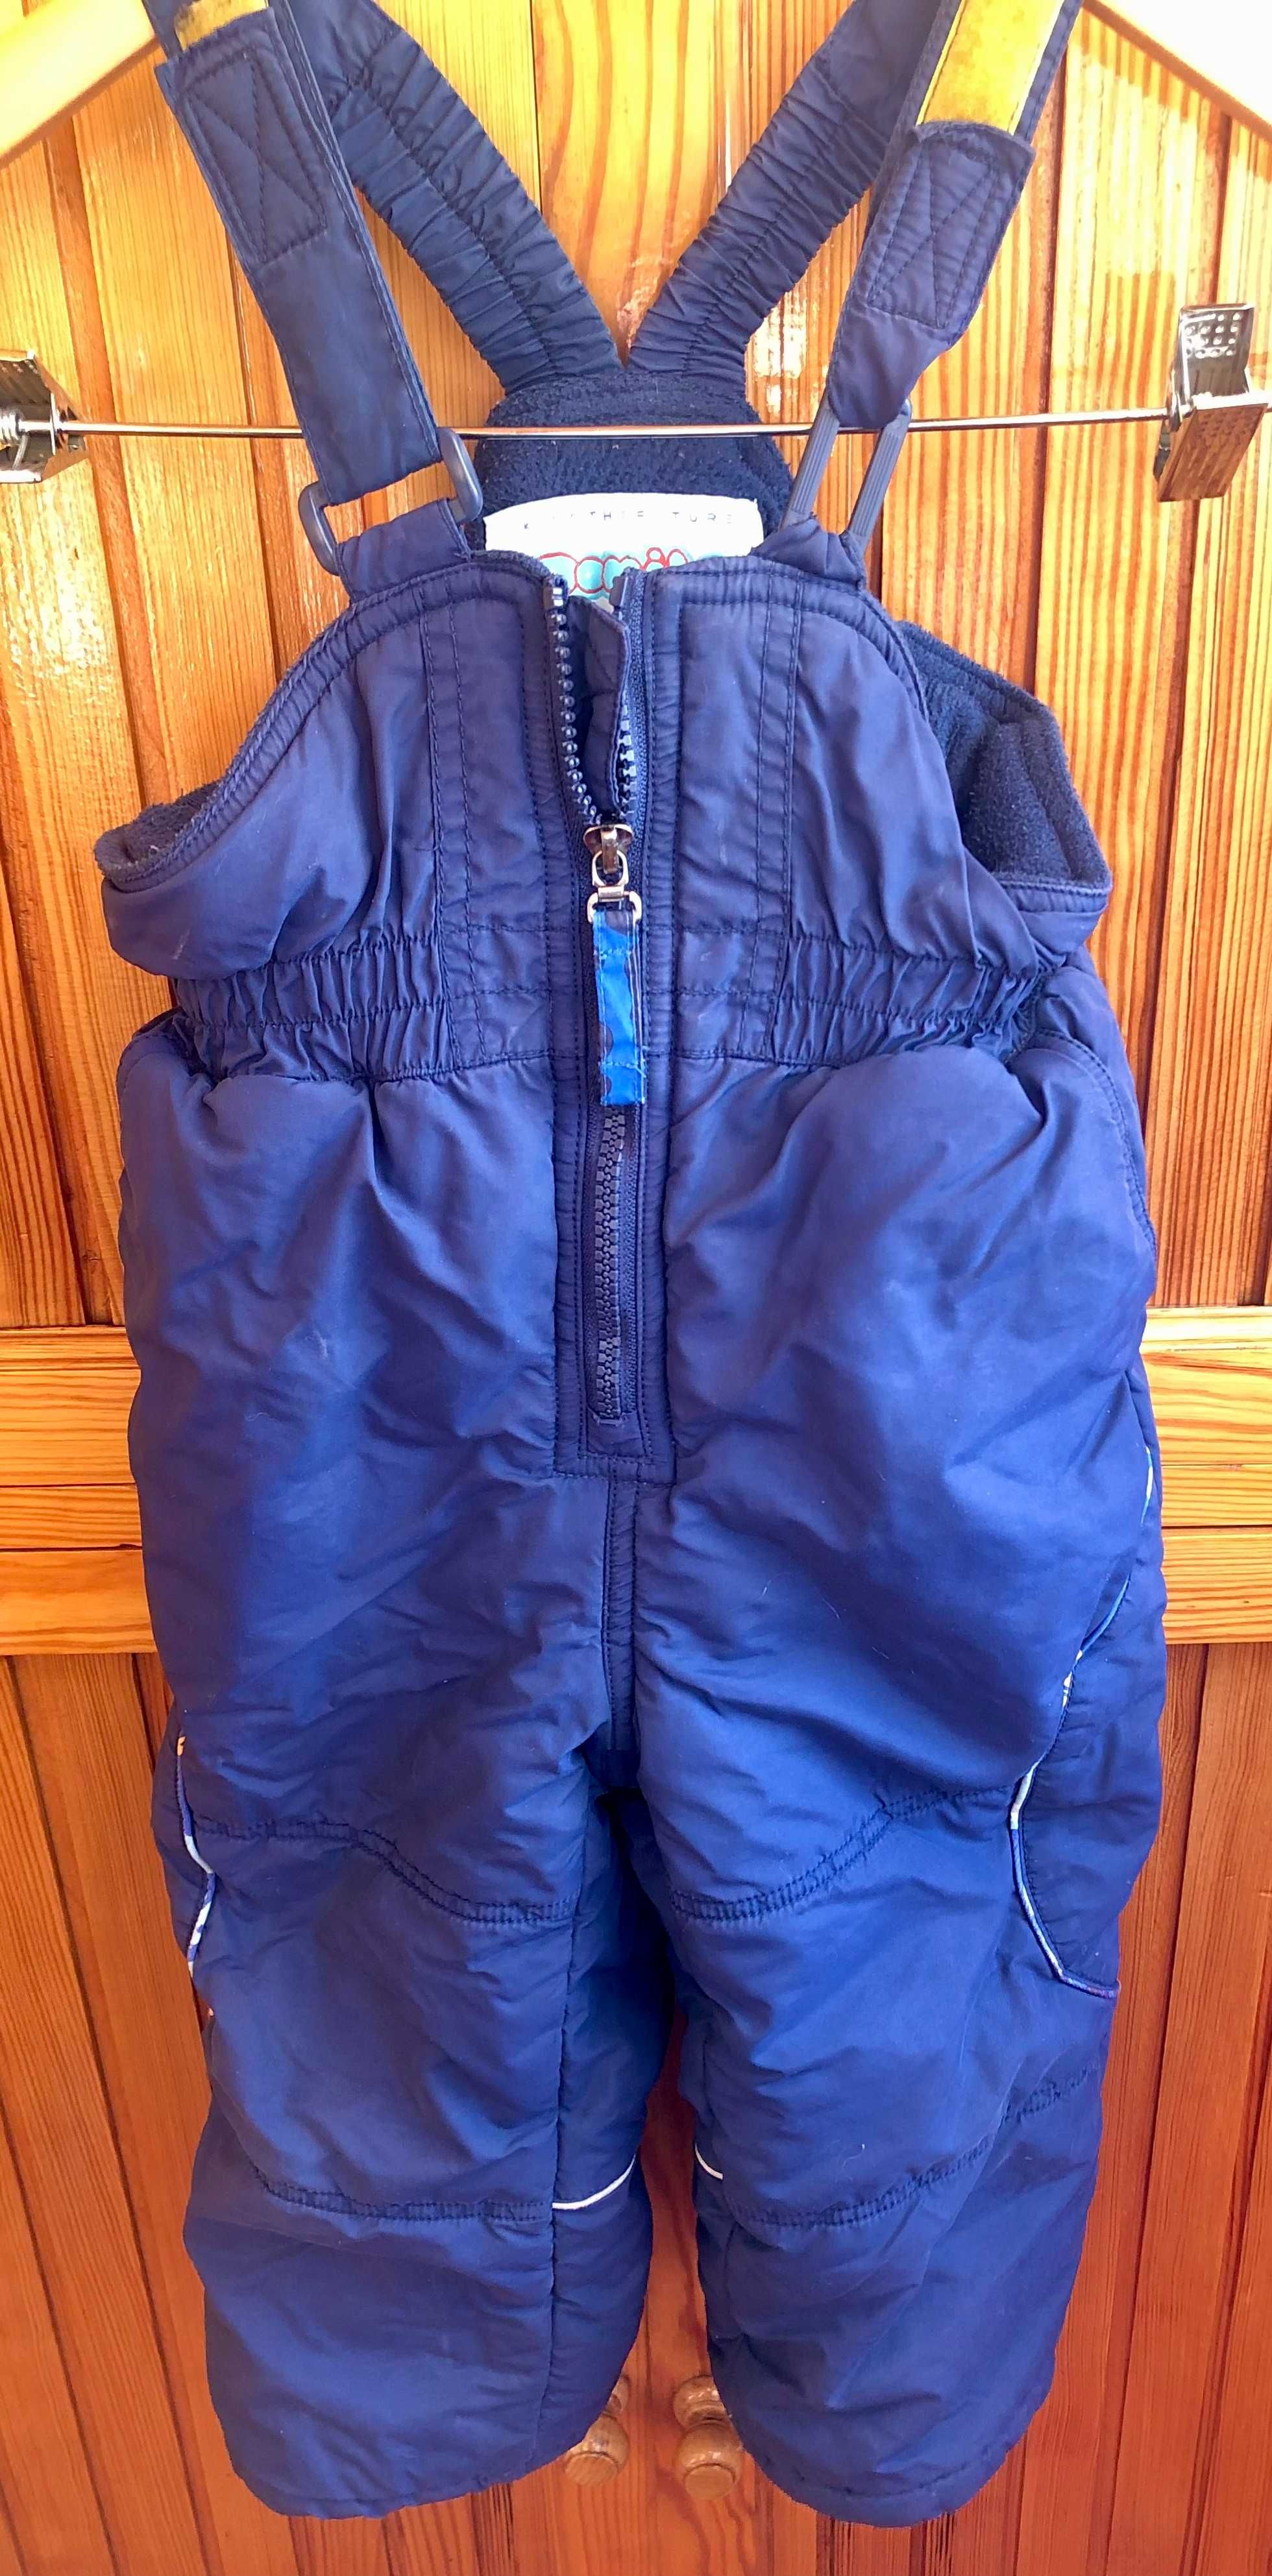 Зимний комплект для мальчиков – куртка и полукомбинезон фирмы DANILO.